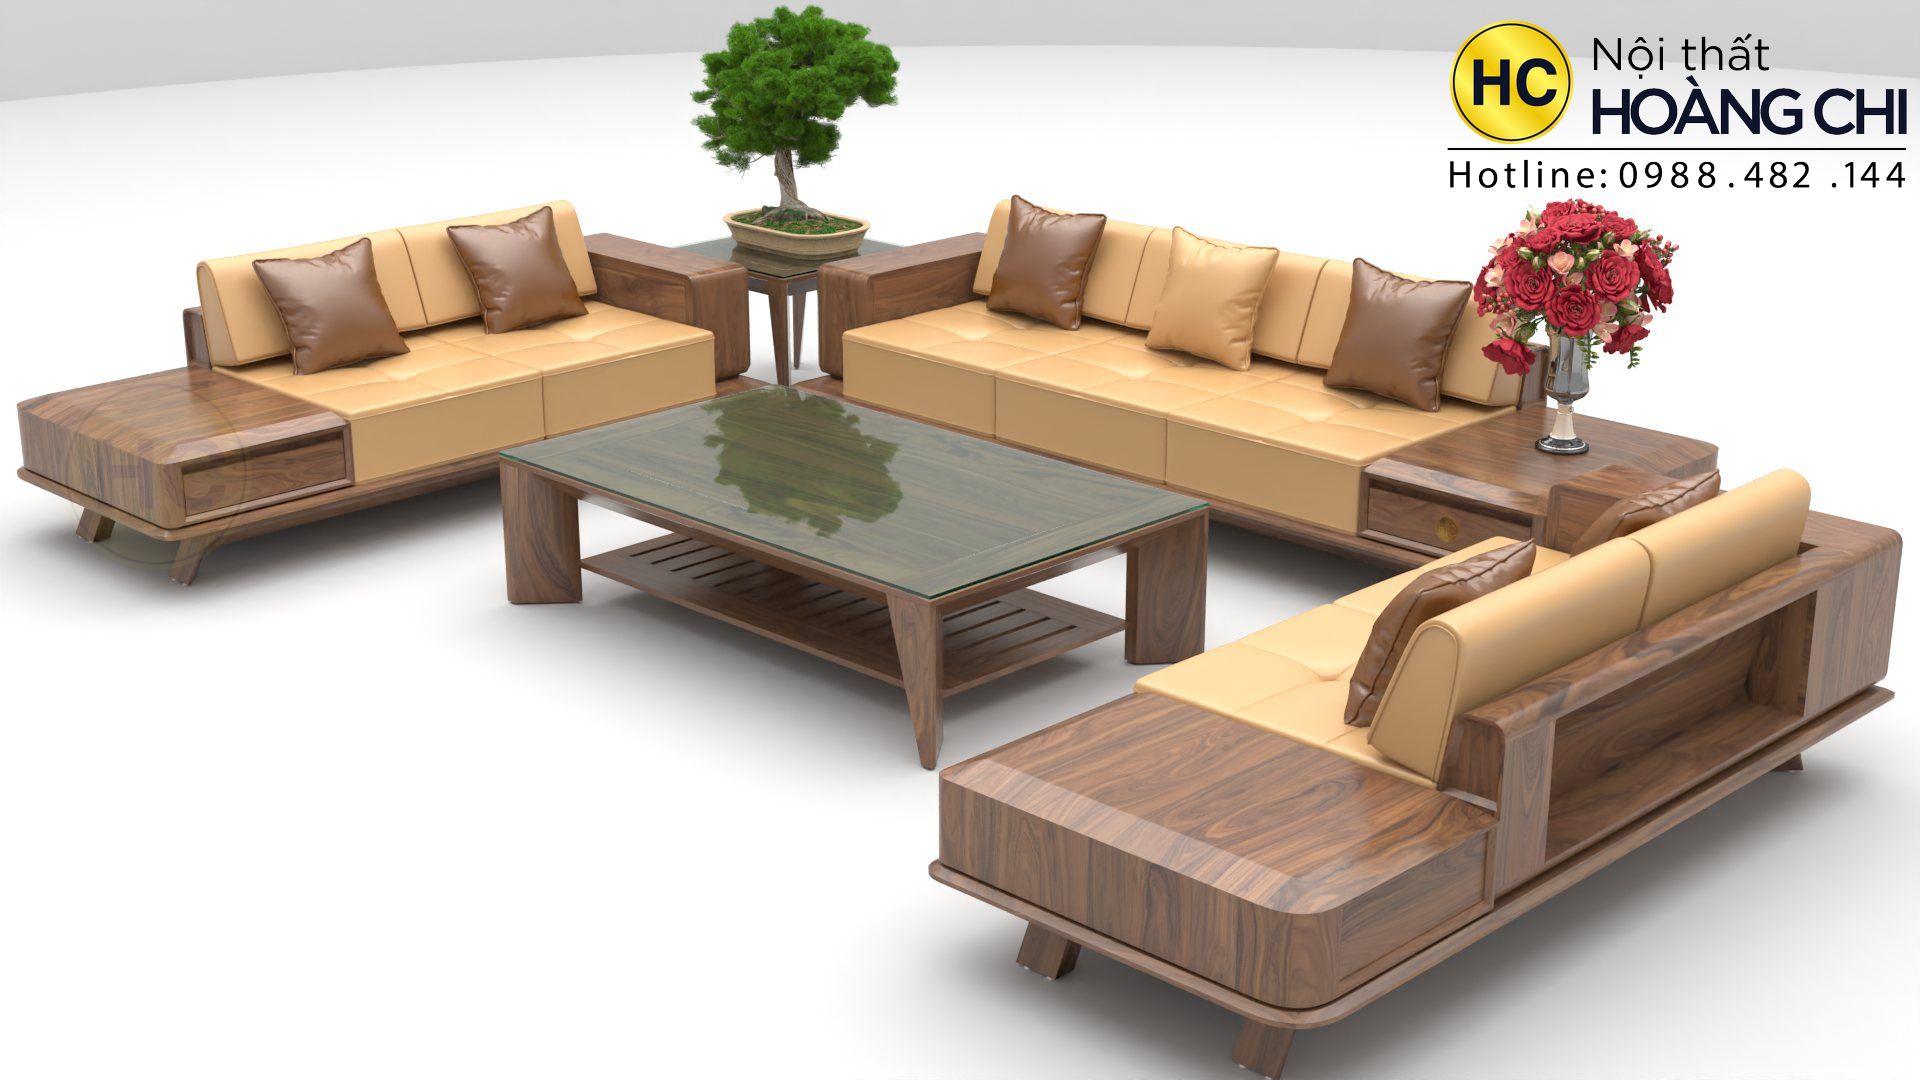 Ghế sofa gỗ đang là xu hướng tại các gia đình hiện nay. Với nhiều lựa chọn về mẫu mã, kiểu dáng và chất liệu, bạn có thể lựa chọn cho mình một chiếc ghế sofa gỗ phù hợp với không gian sống của mình. Chất liệu gỗ tự nhiên giúp chiếc ghế sofa không chỉ bền đẹp mà còn mang đến cảm giác ấm áp và thân thiện.